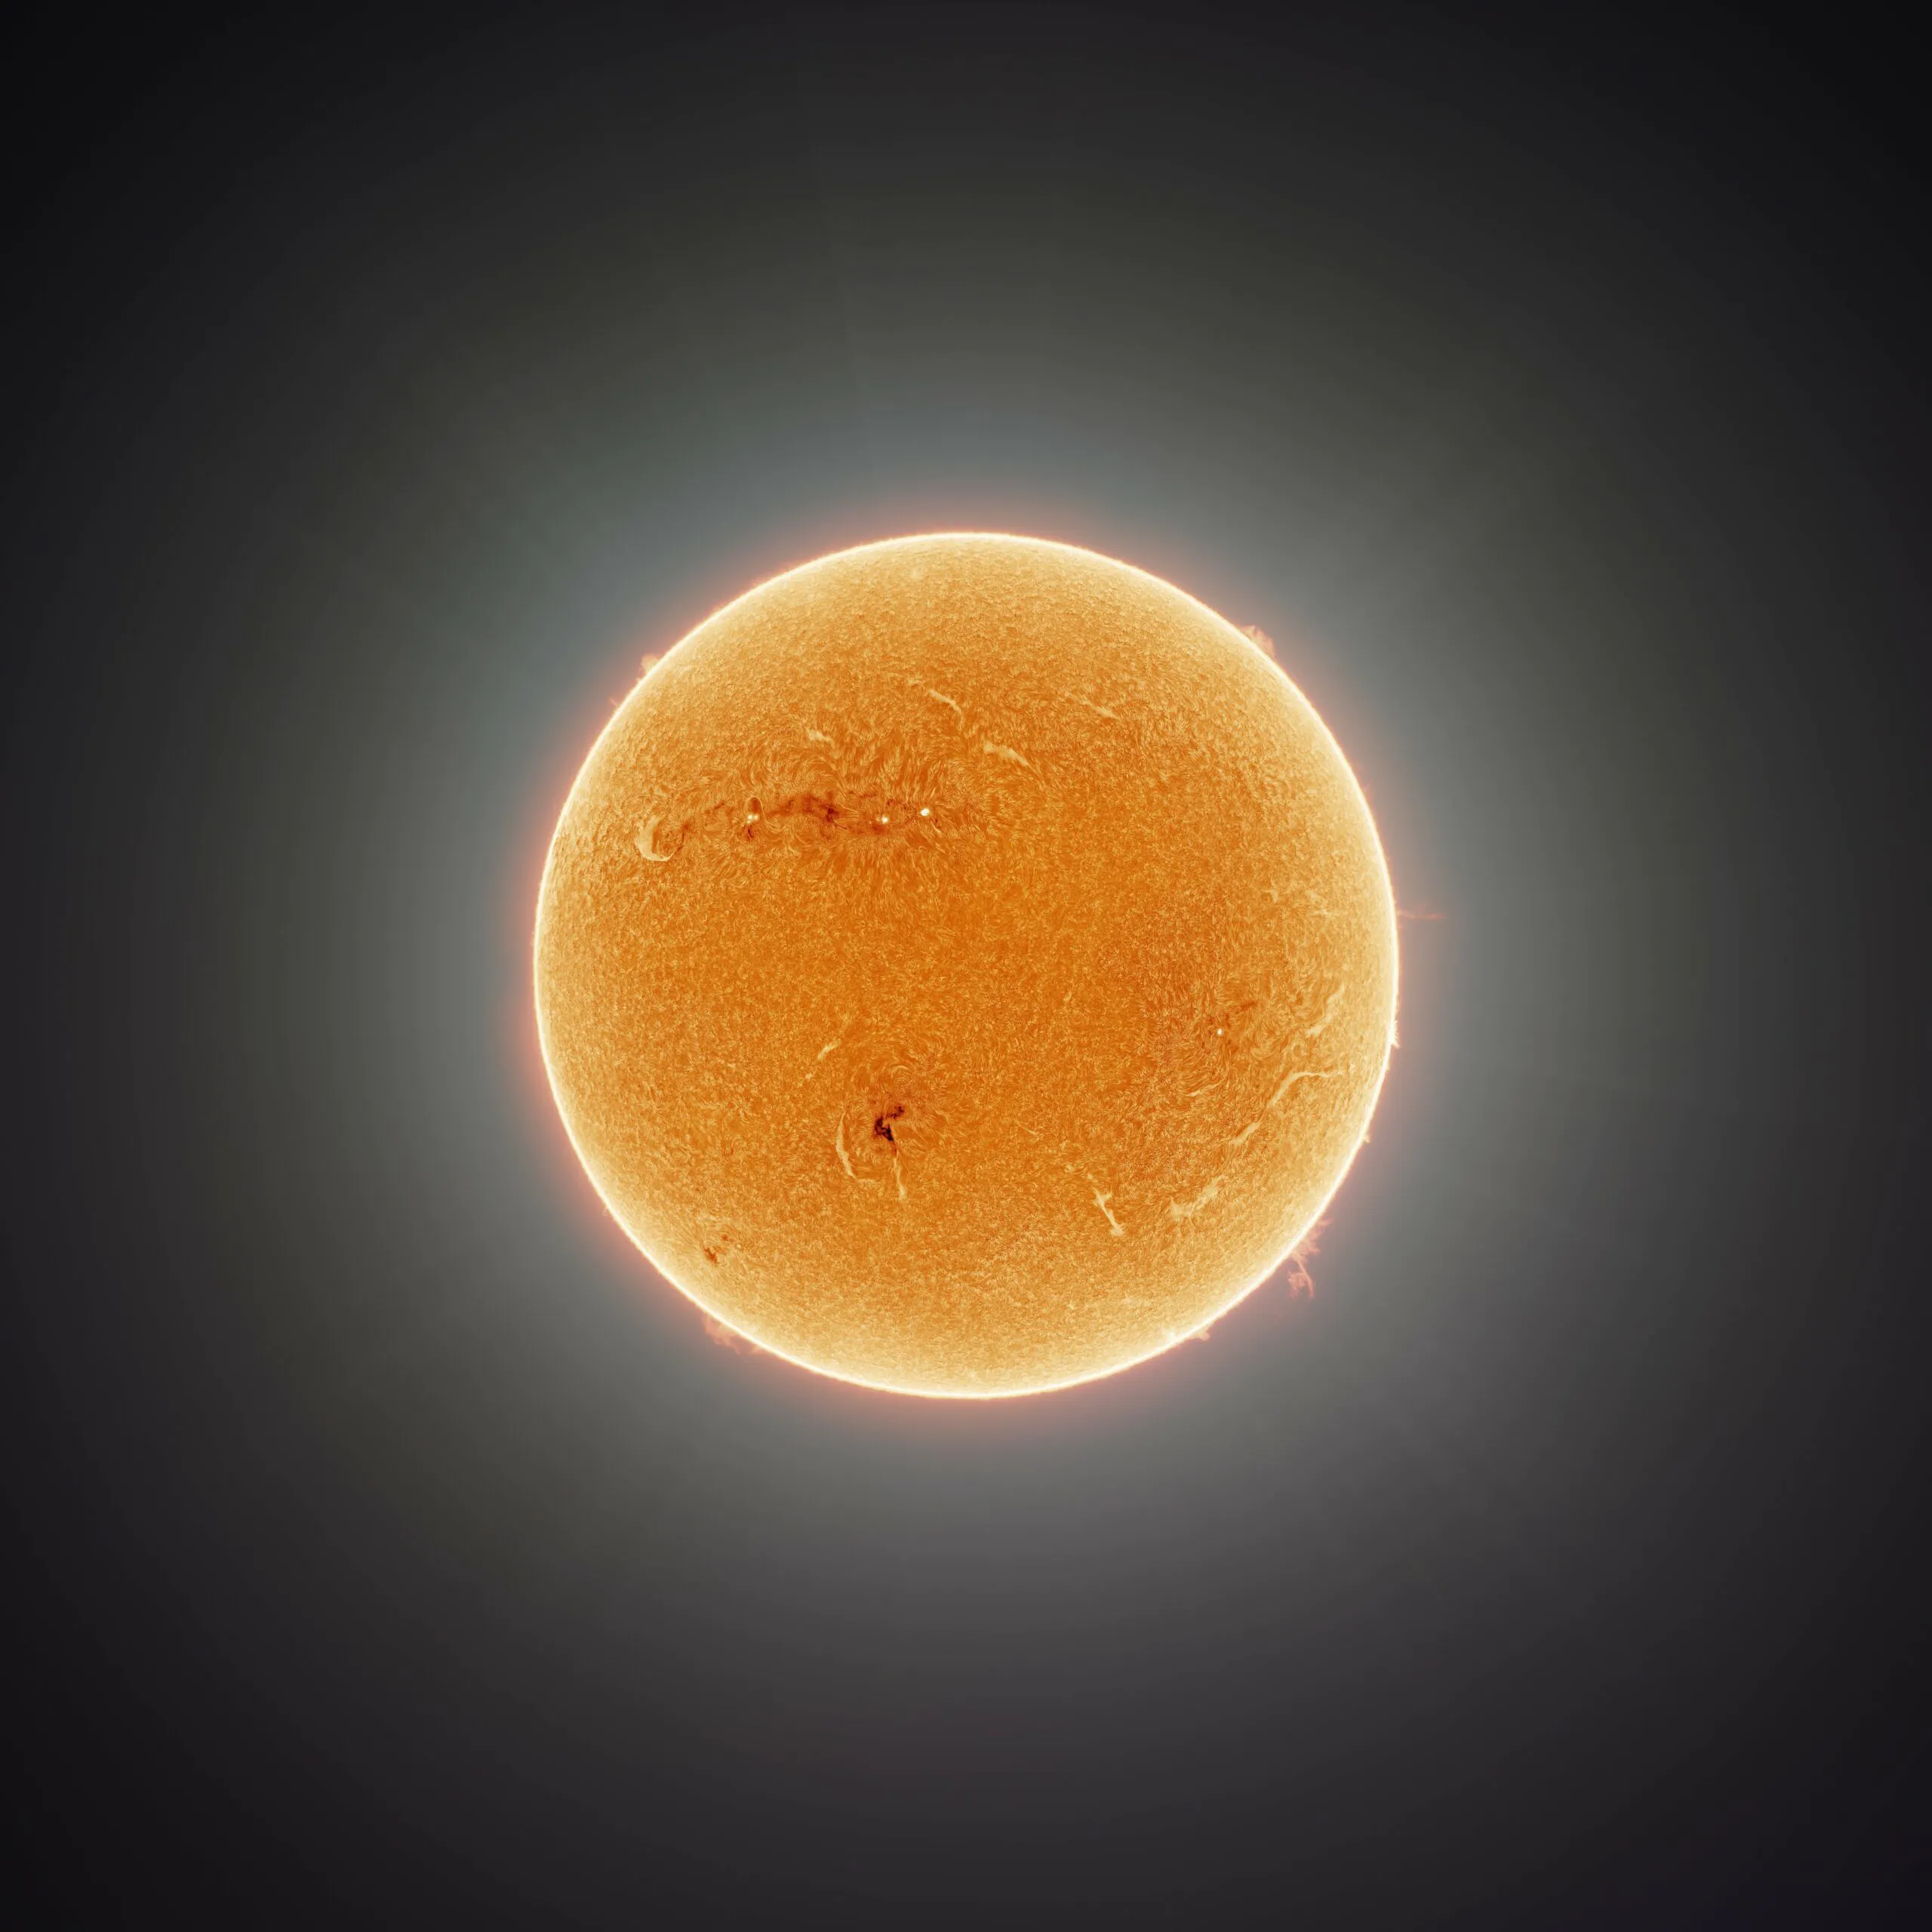 Objavljen je najdetaljniji portret Sunca od 164 miliona piksela